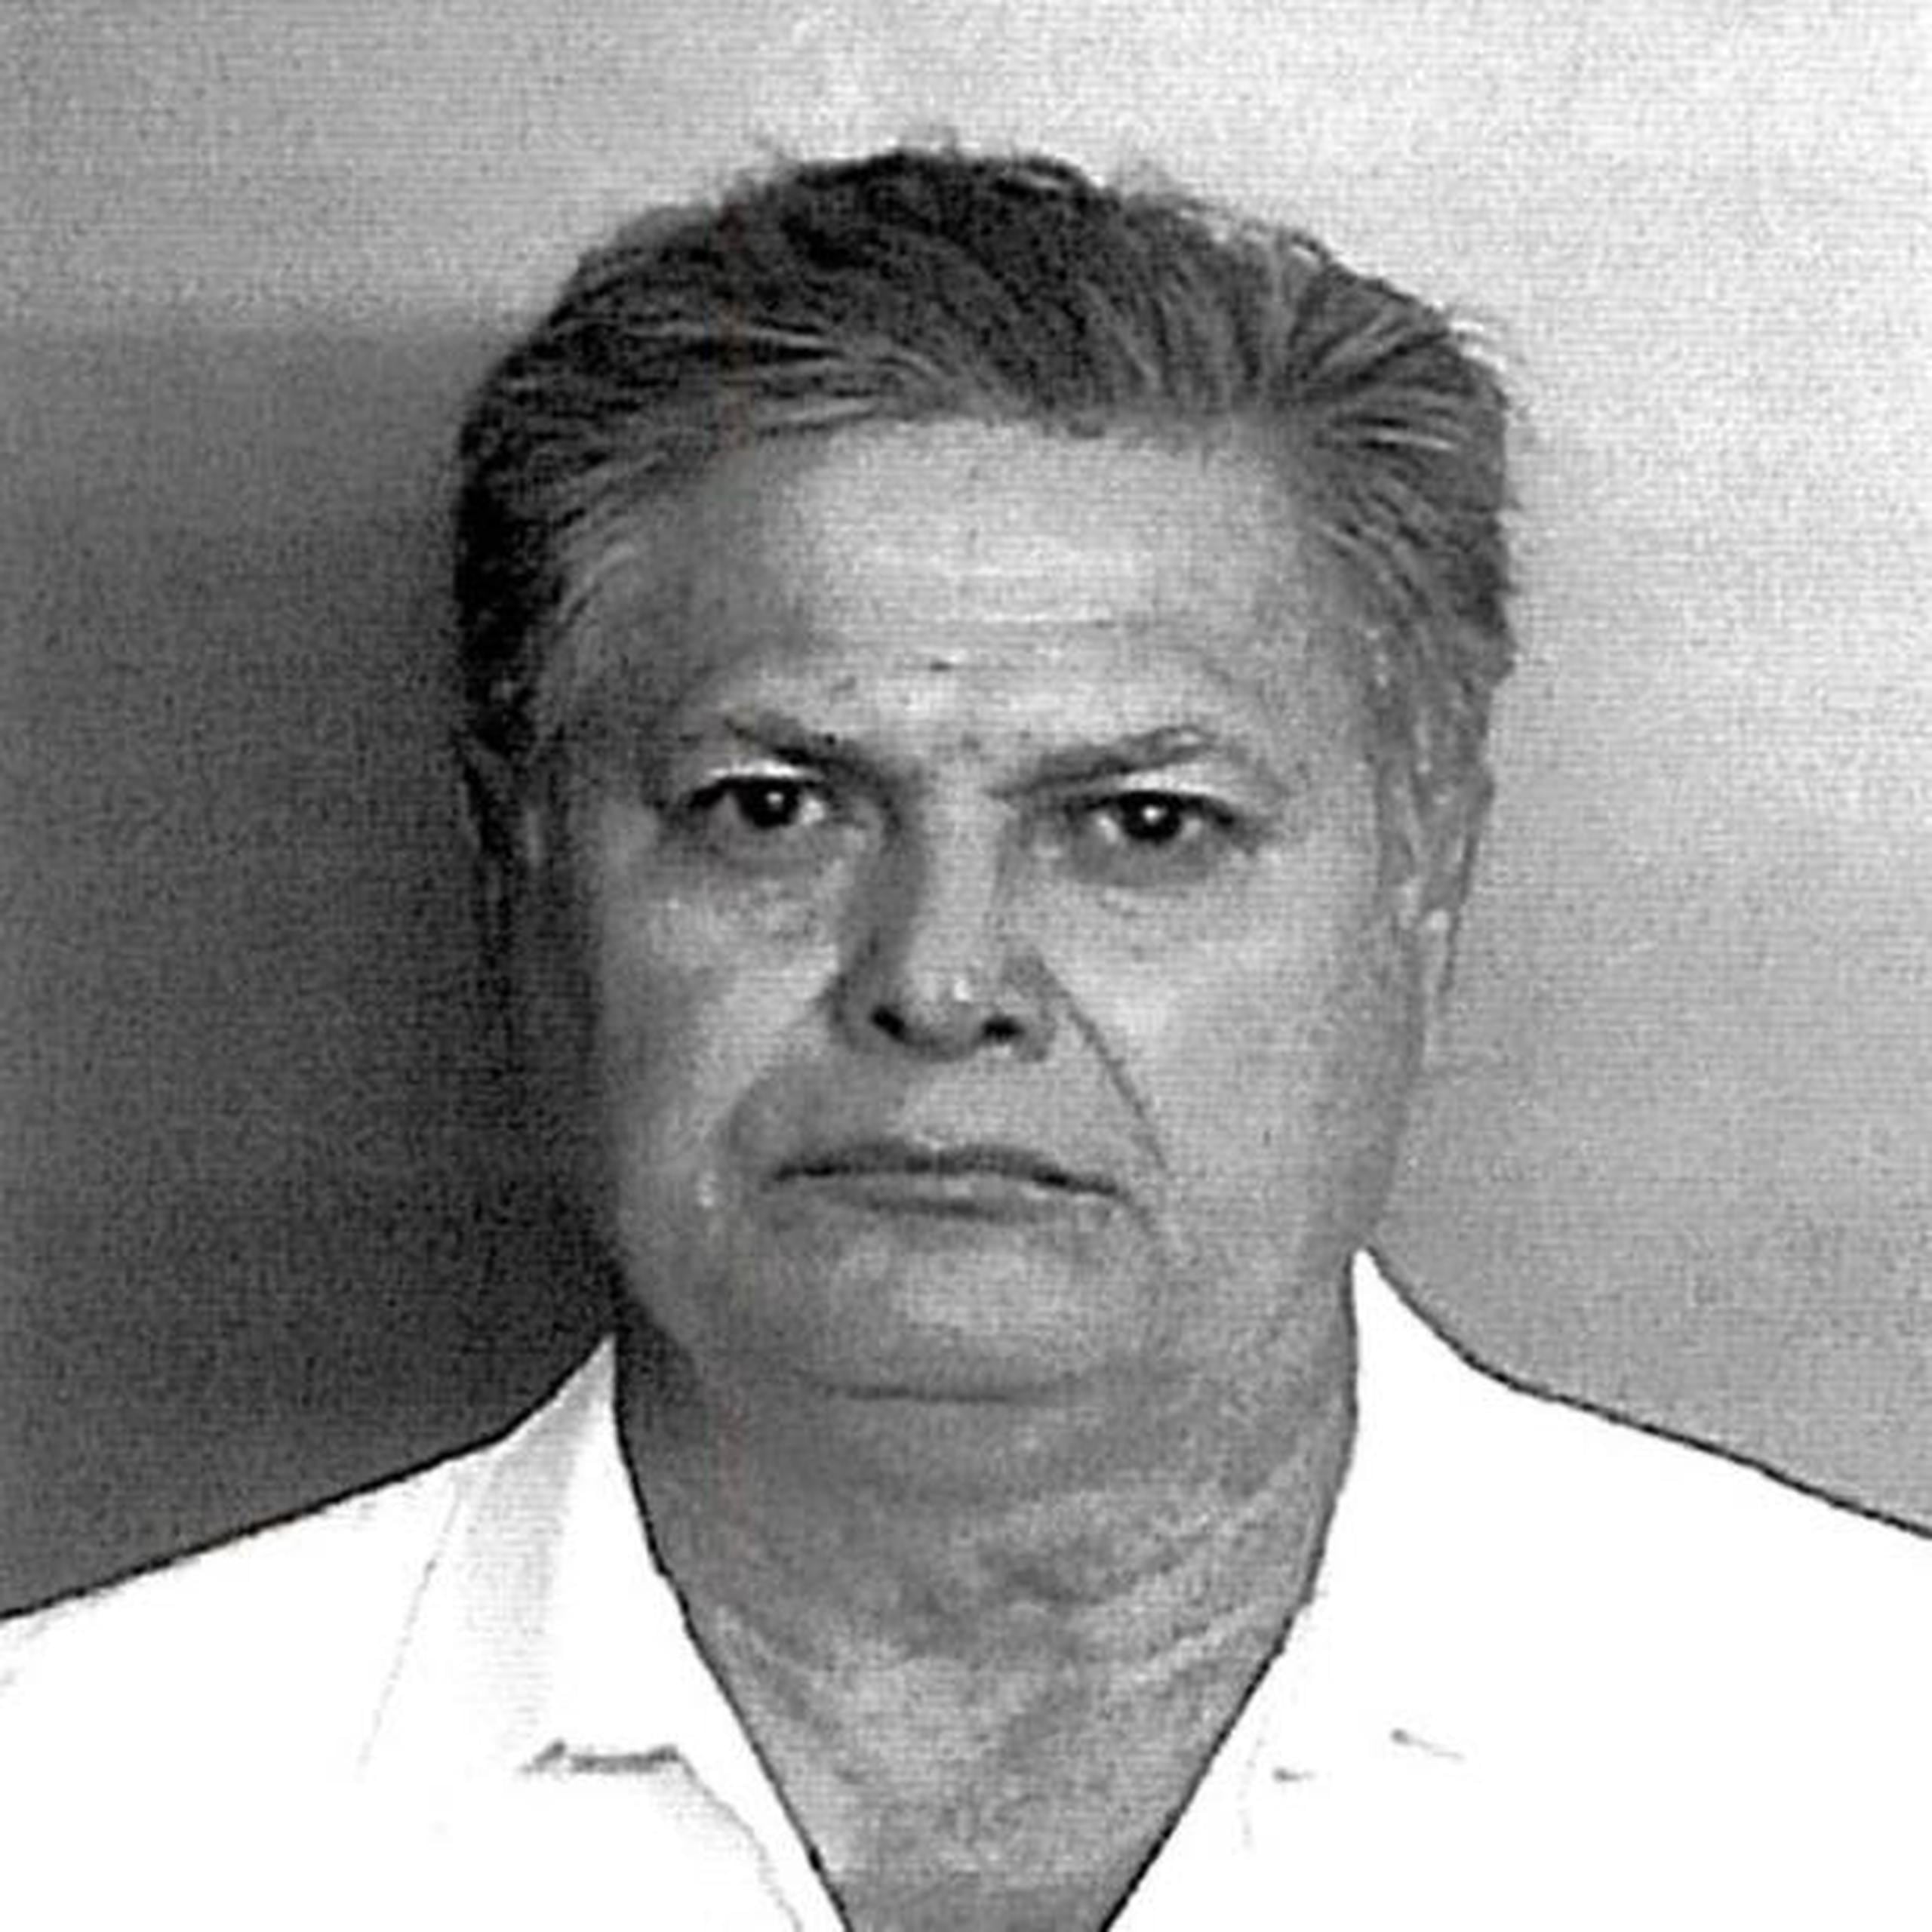 El sospechoso fue identificado como Gilberto Burgos Negrón, de 60 años. (Suministrada)